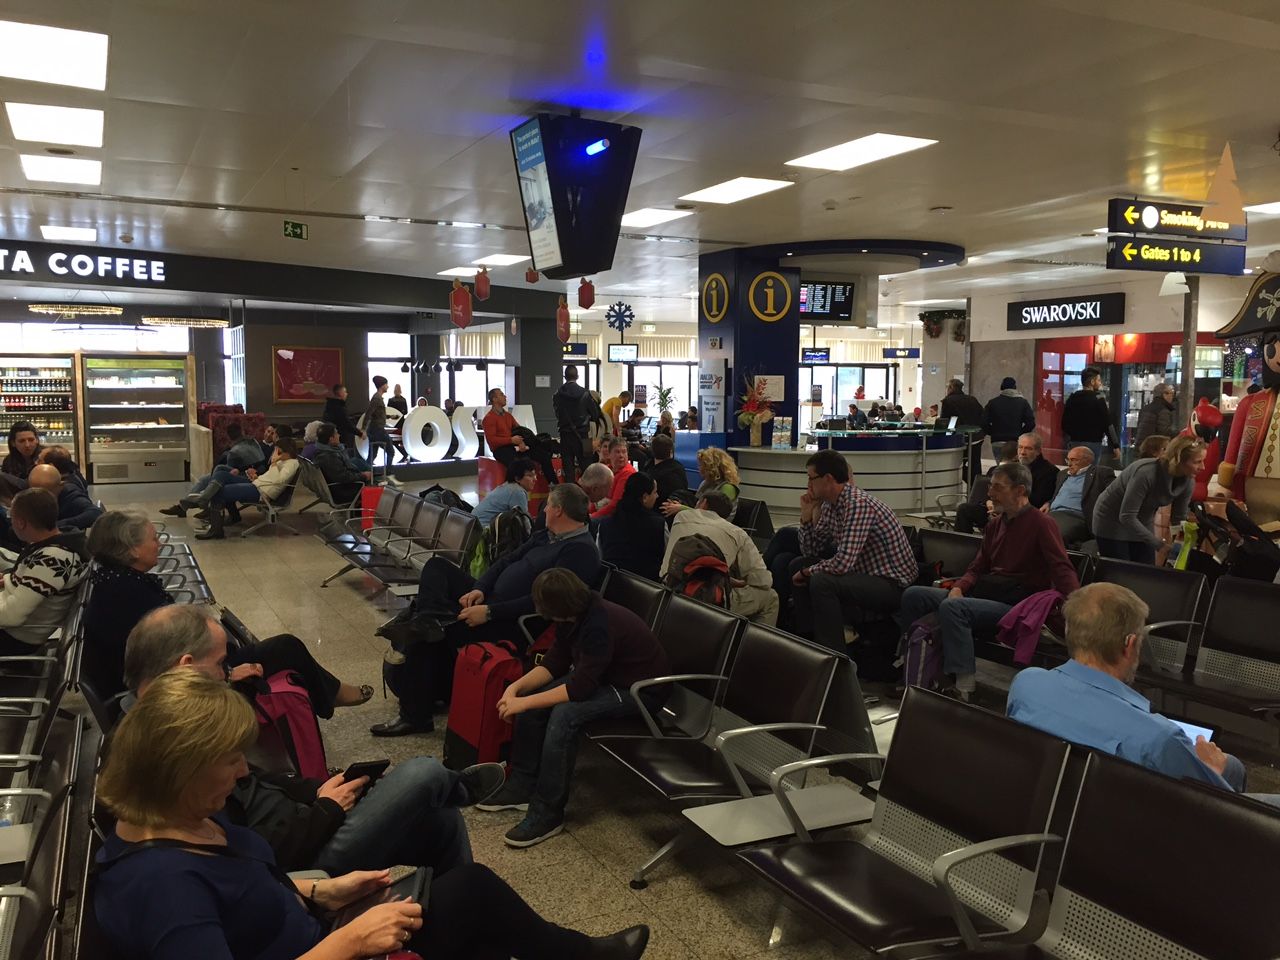  Il volo per Comiso non parte mai: cento passeggeri bloccati 10 ore a Malta